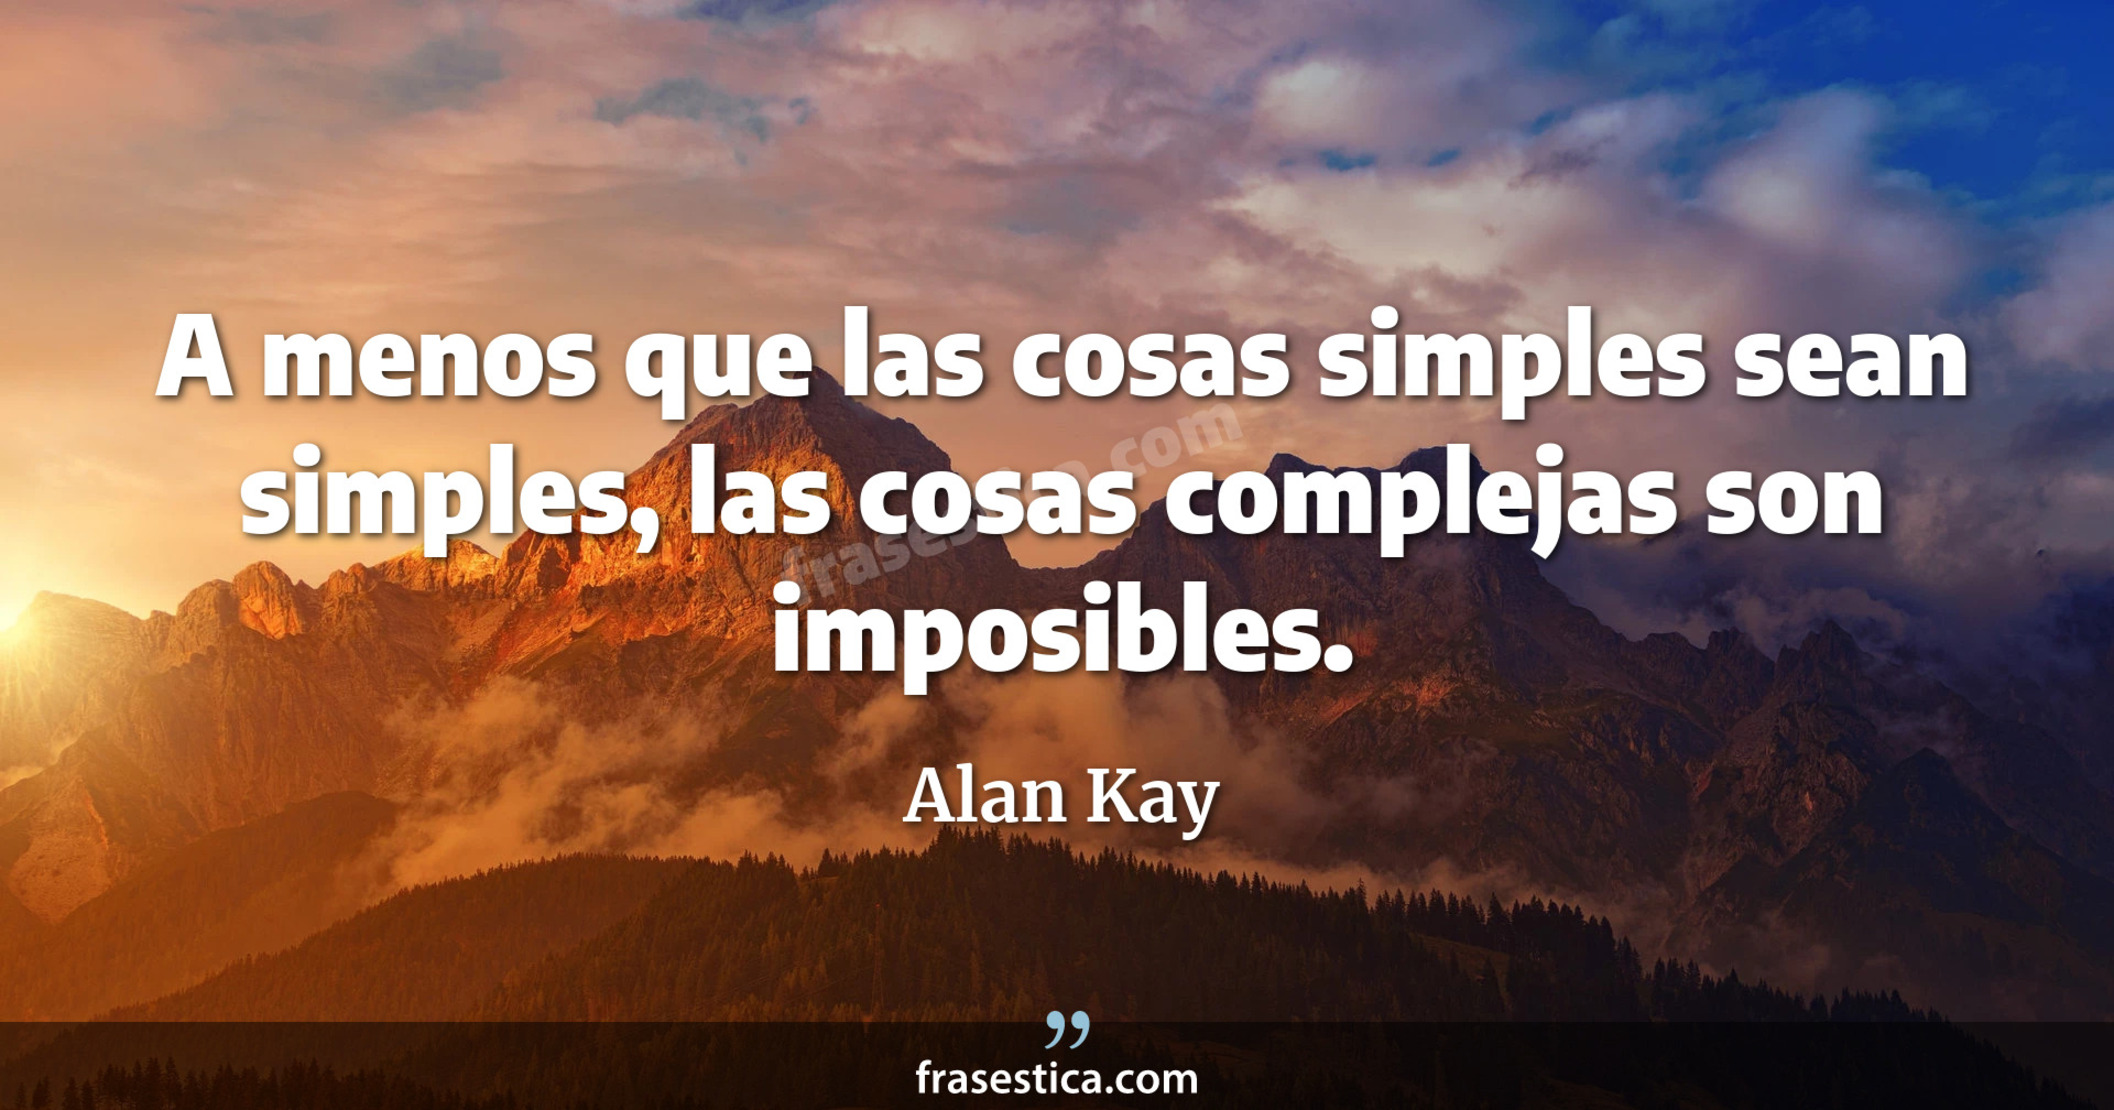 A menos que las cosas simples sean simples, las cosas complejas son imposibles. - Alan Kay